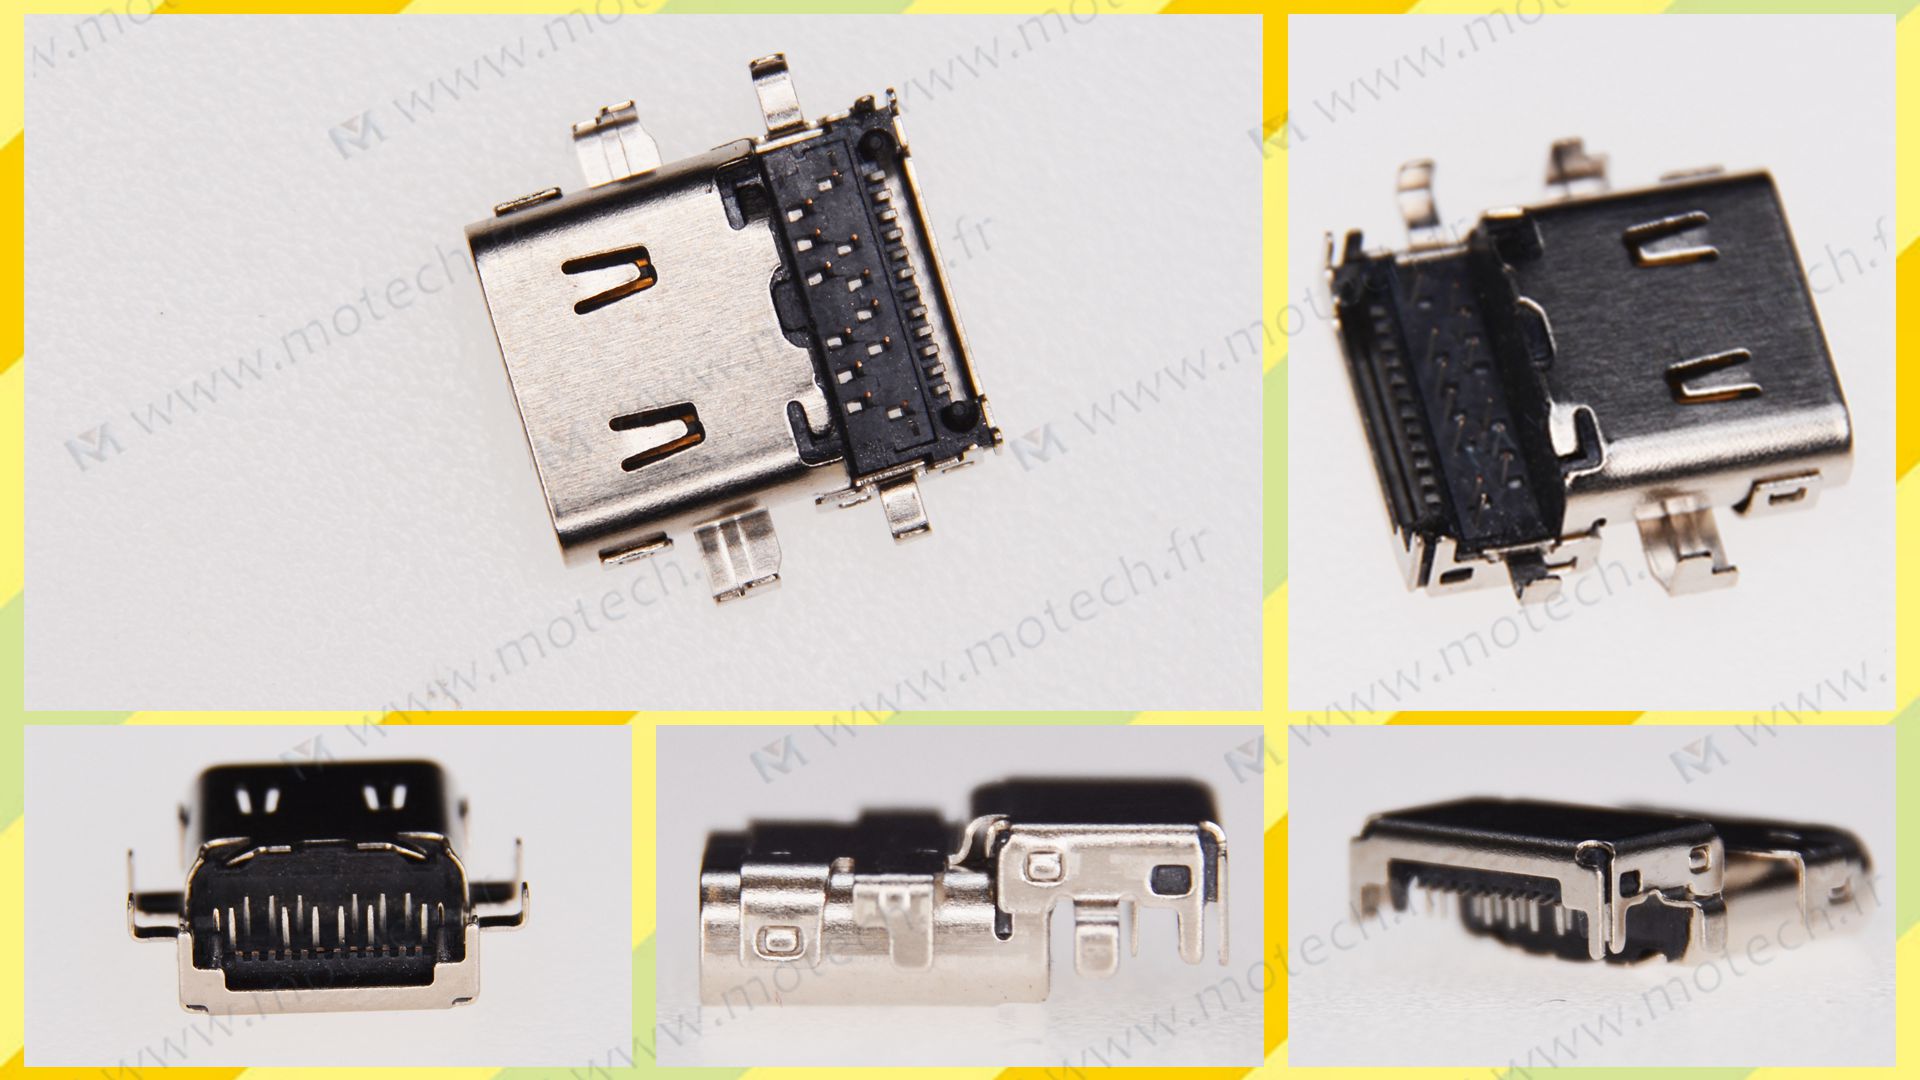  HP 15-bl018ca USB Type C, HP 15-bl018ca Port USB à souder, HP 15-bl018ca charging card, HP 15-bl018ca USB port for welding, HP 15-bl018ca charging port, HP 15-bl018ca charging connector, HP 15-bl018ca DC Power Jack, Socket Plug Port HP 15-bl018ca, Power jack HP 15-bl018ca, 